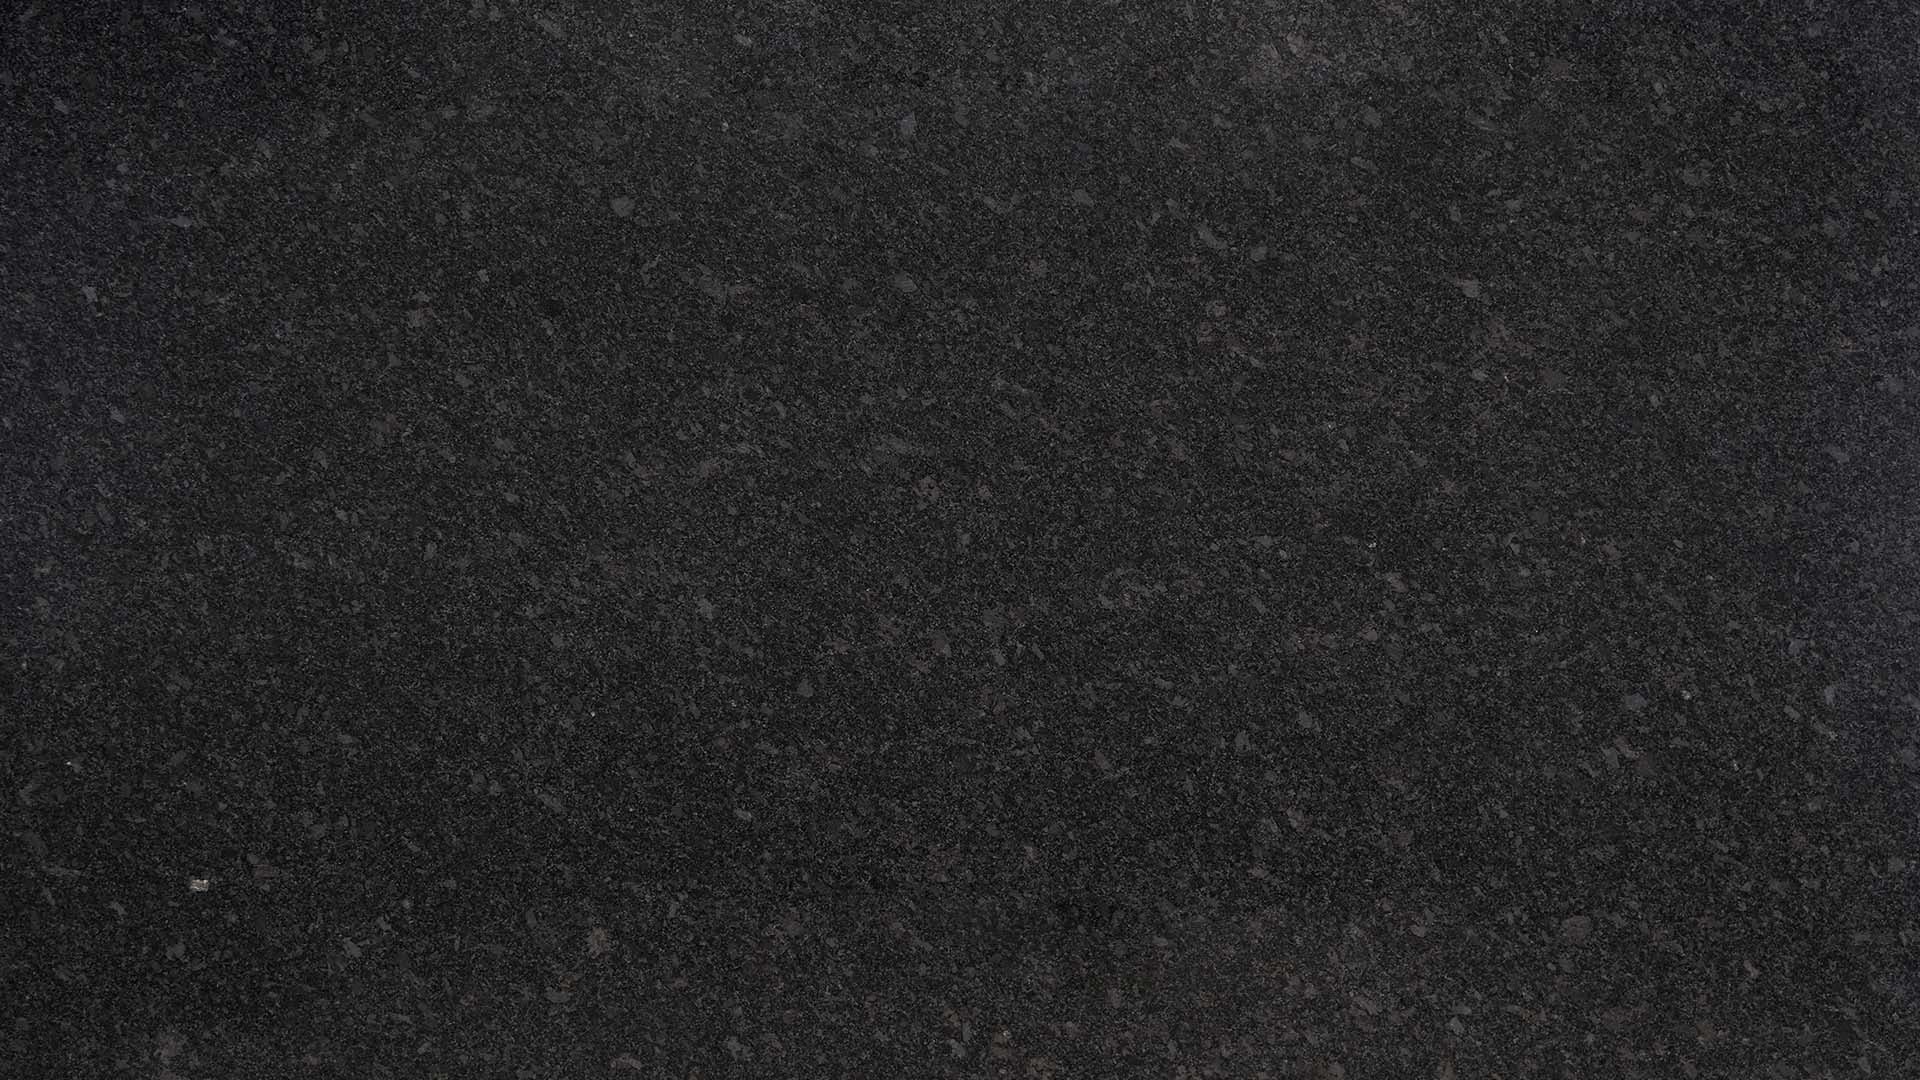 Naturstein Küchenarbeitsplatte poliert in der Grundfarbe schwarz mit silber-grauen Einsätzen wie Regenperlen in der Farbe Silver Pearl.